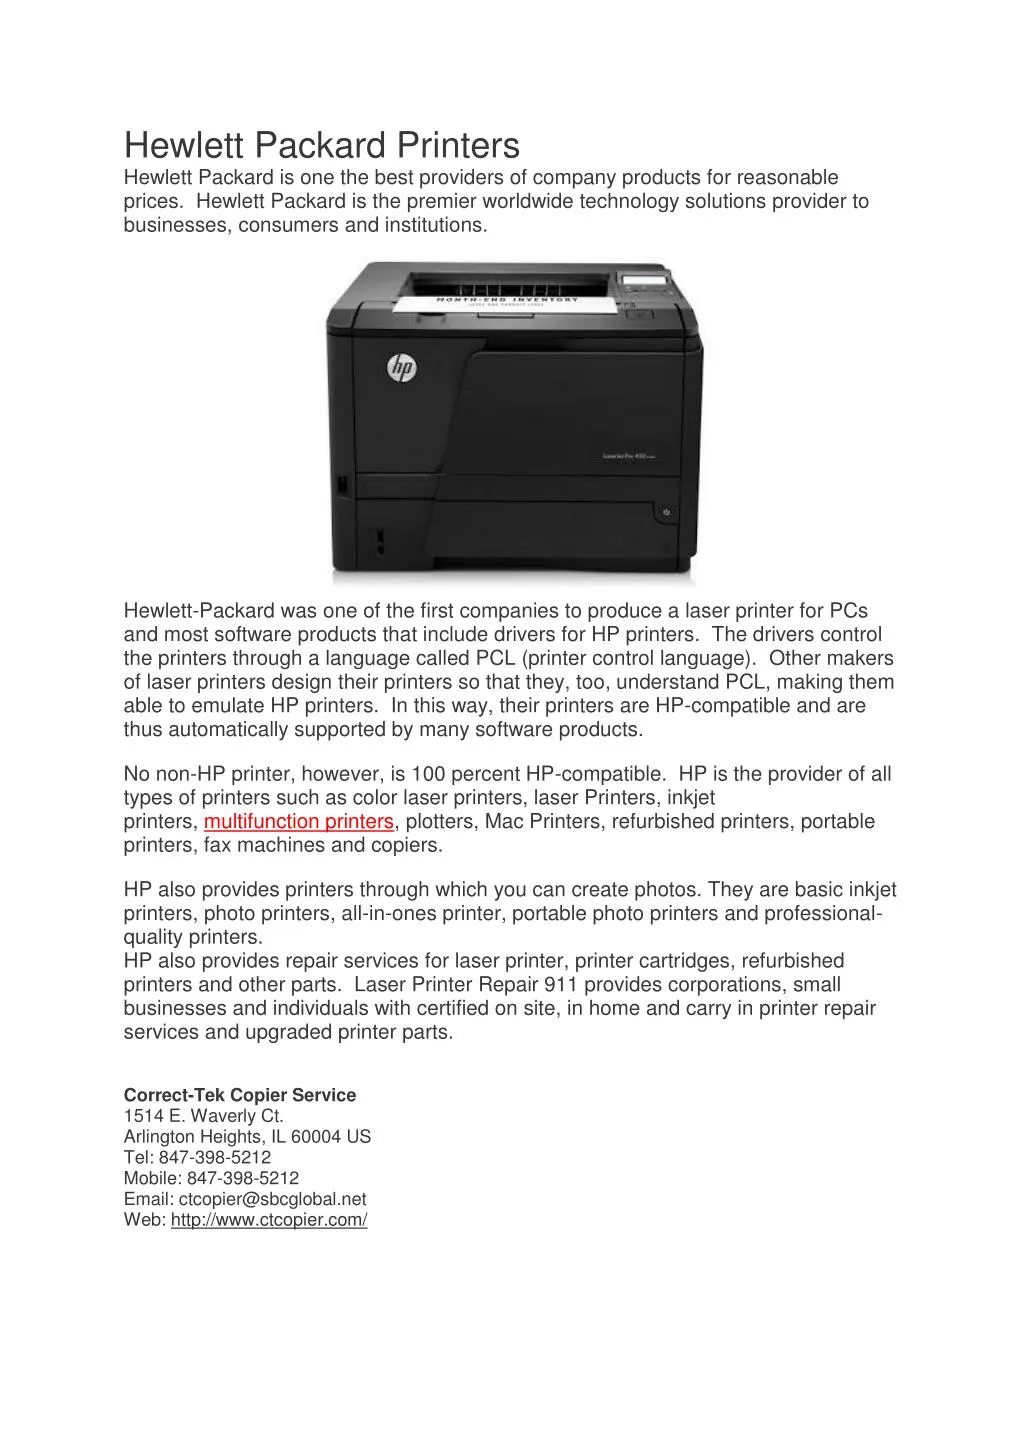 hewlett packard printers hewlett packard